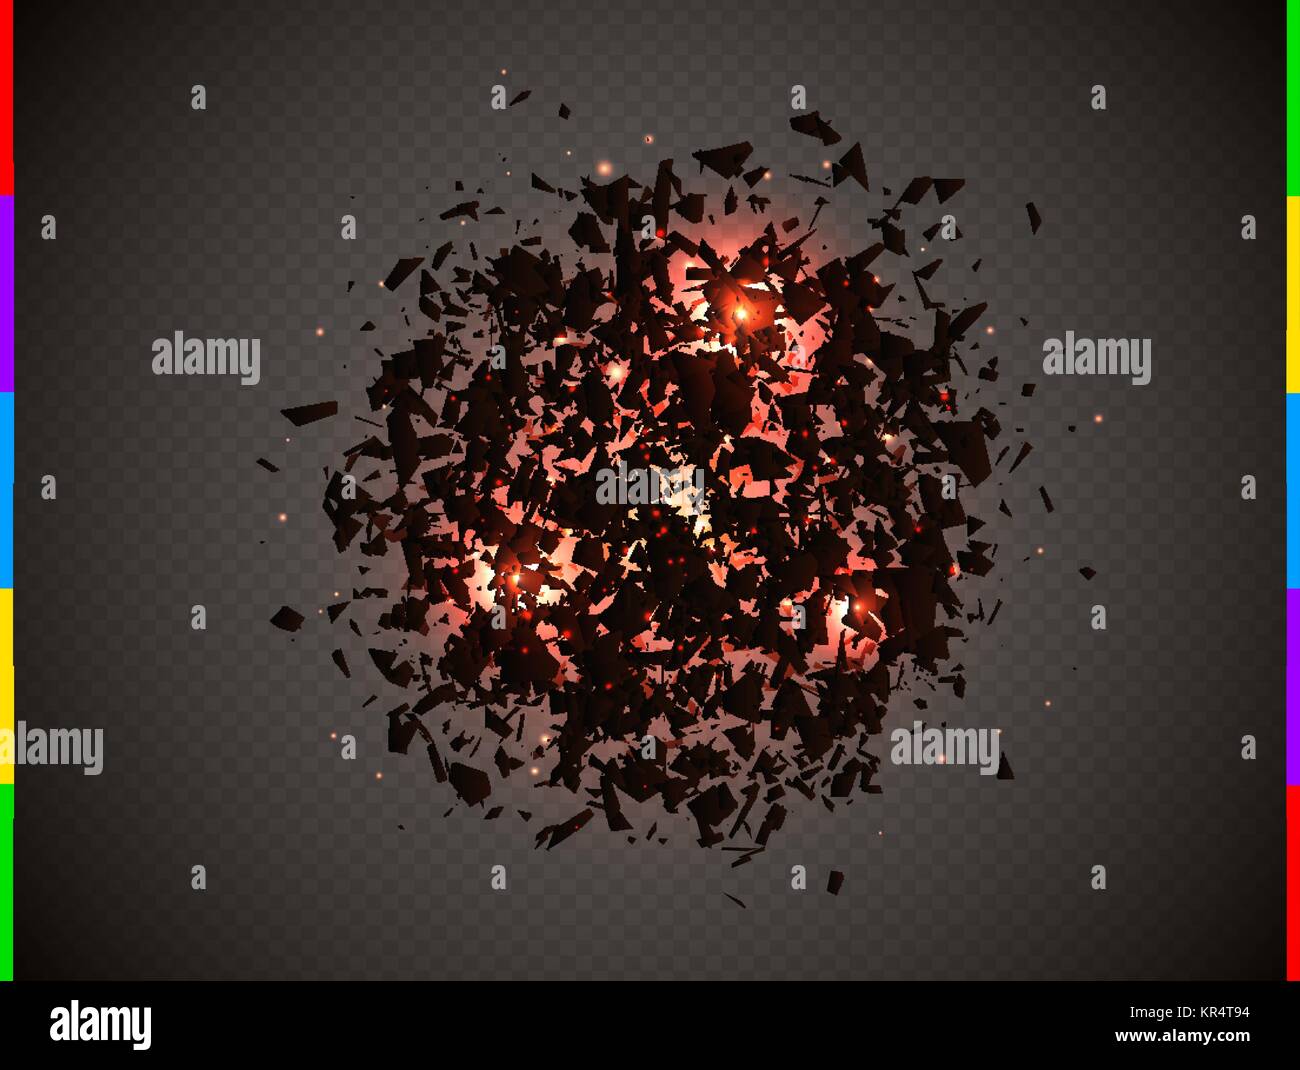 Abstrakte explosion Wolke von schwarzen Teile mit roten Flare und Funken. Explosive Zerstörung. Partikel auf transparenten Hintergrund. Vector Illustration Stock Vektor